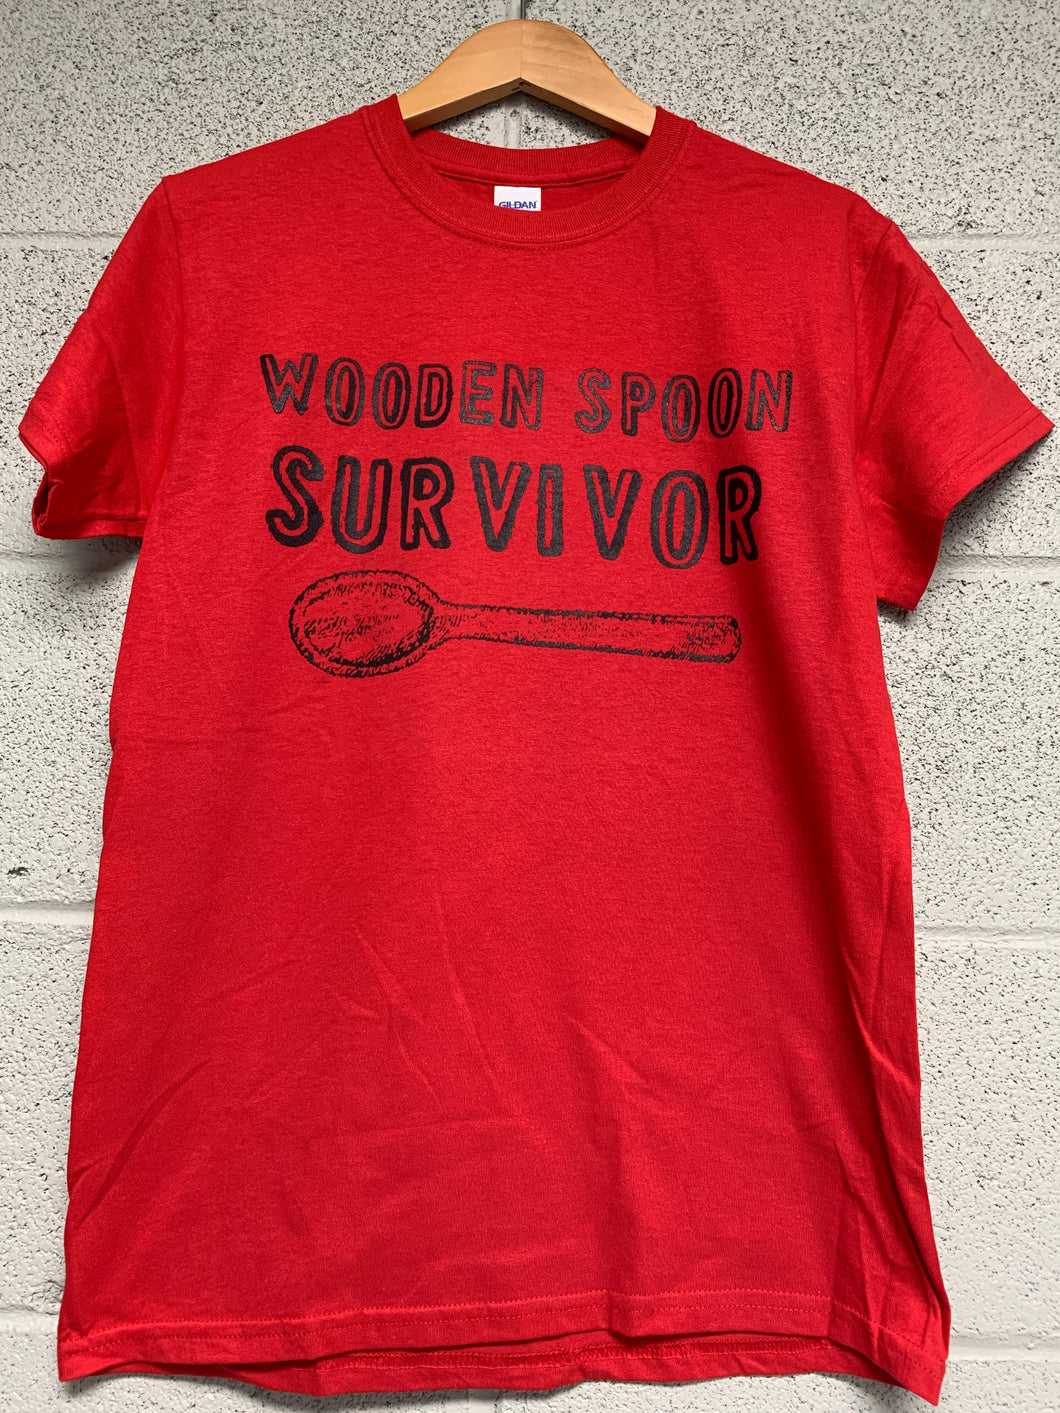 wooden spoon survivor shirt Red